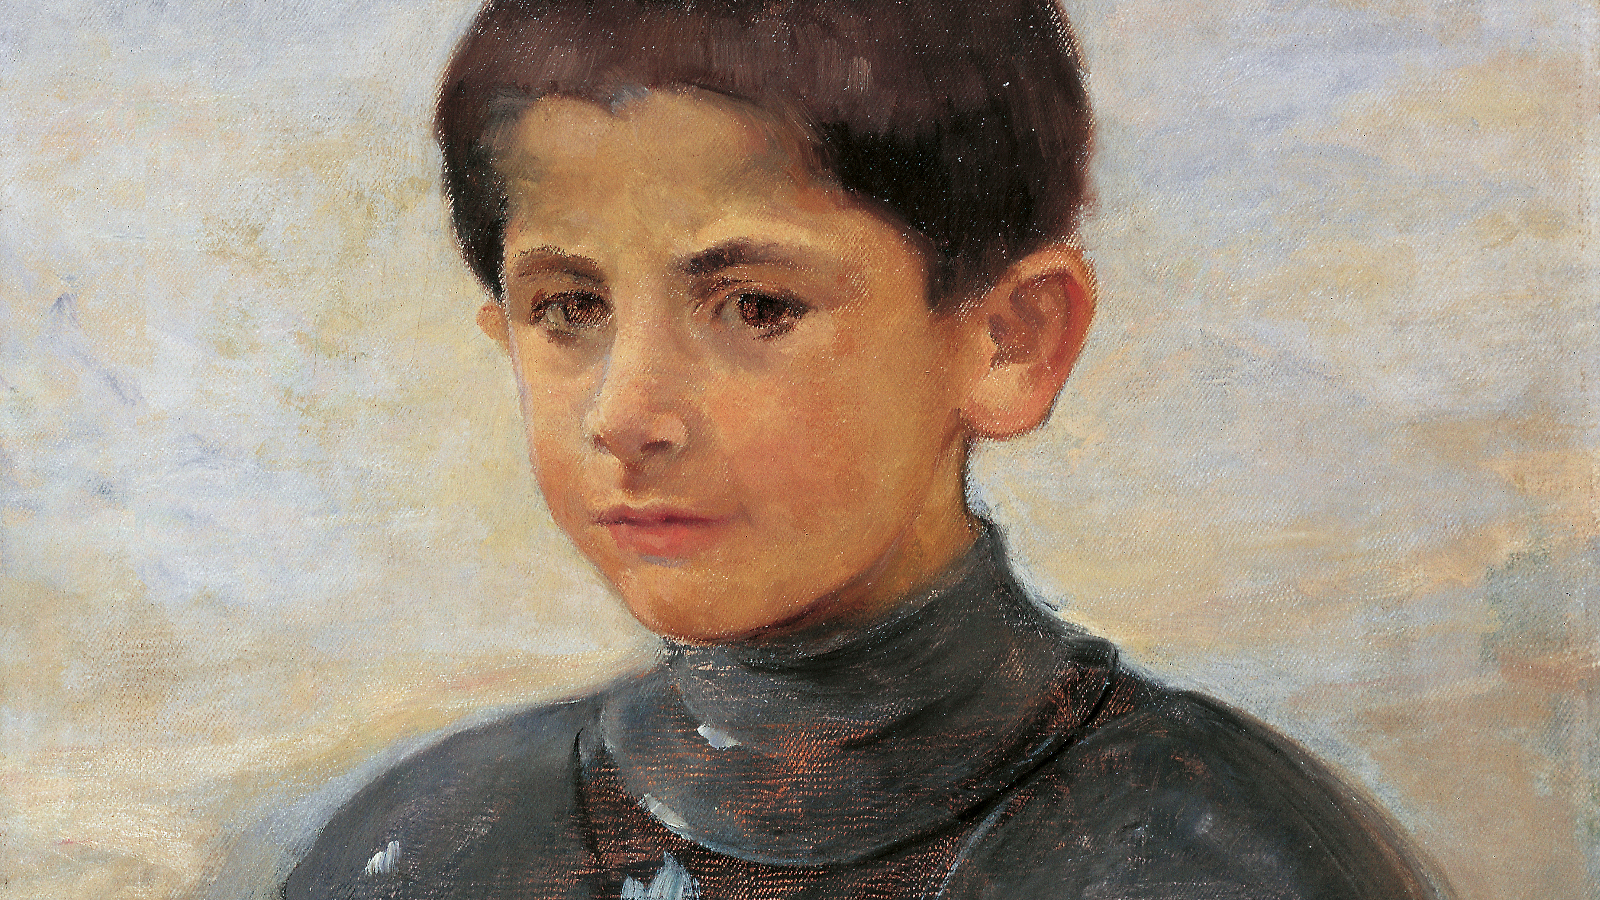 Kuvassa on osa teoksesta, jonka tausta on harmaan ruskehtava.  Pojasta näkyy kasvot, lyhyt ruskea tukka ja hänellä on haarniska päällään ja hän istuu.